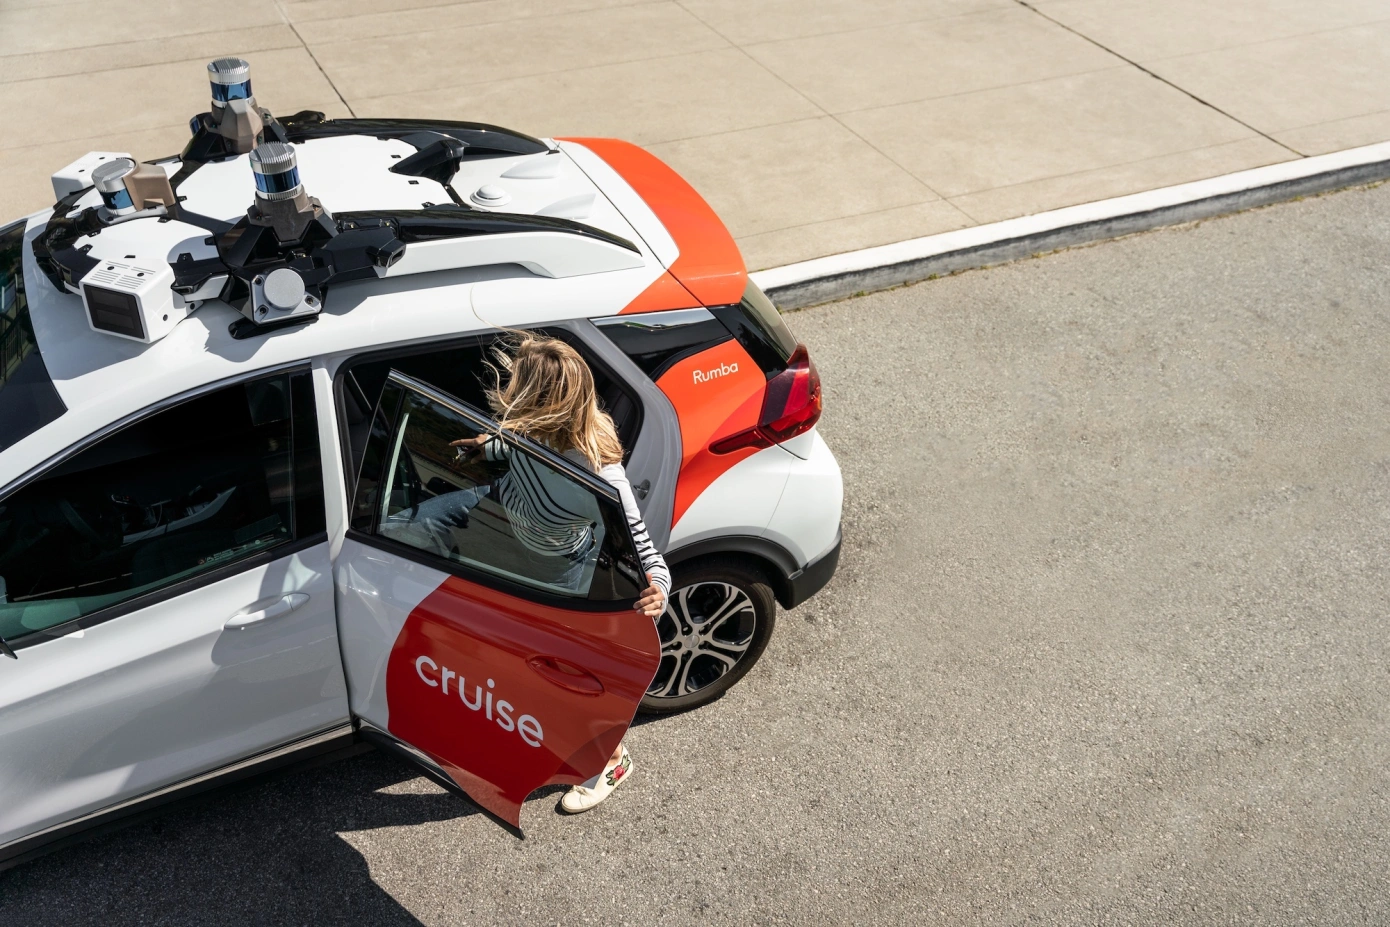 Cruise et Waymo ont qualifié les humains de mauvais conducteurs et ont appelé à une adoption plus rapide des robots taxis.